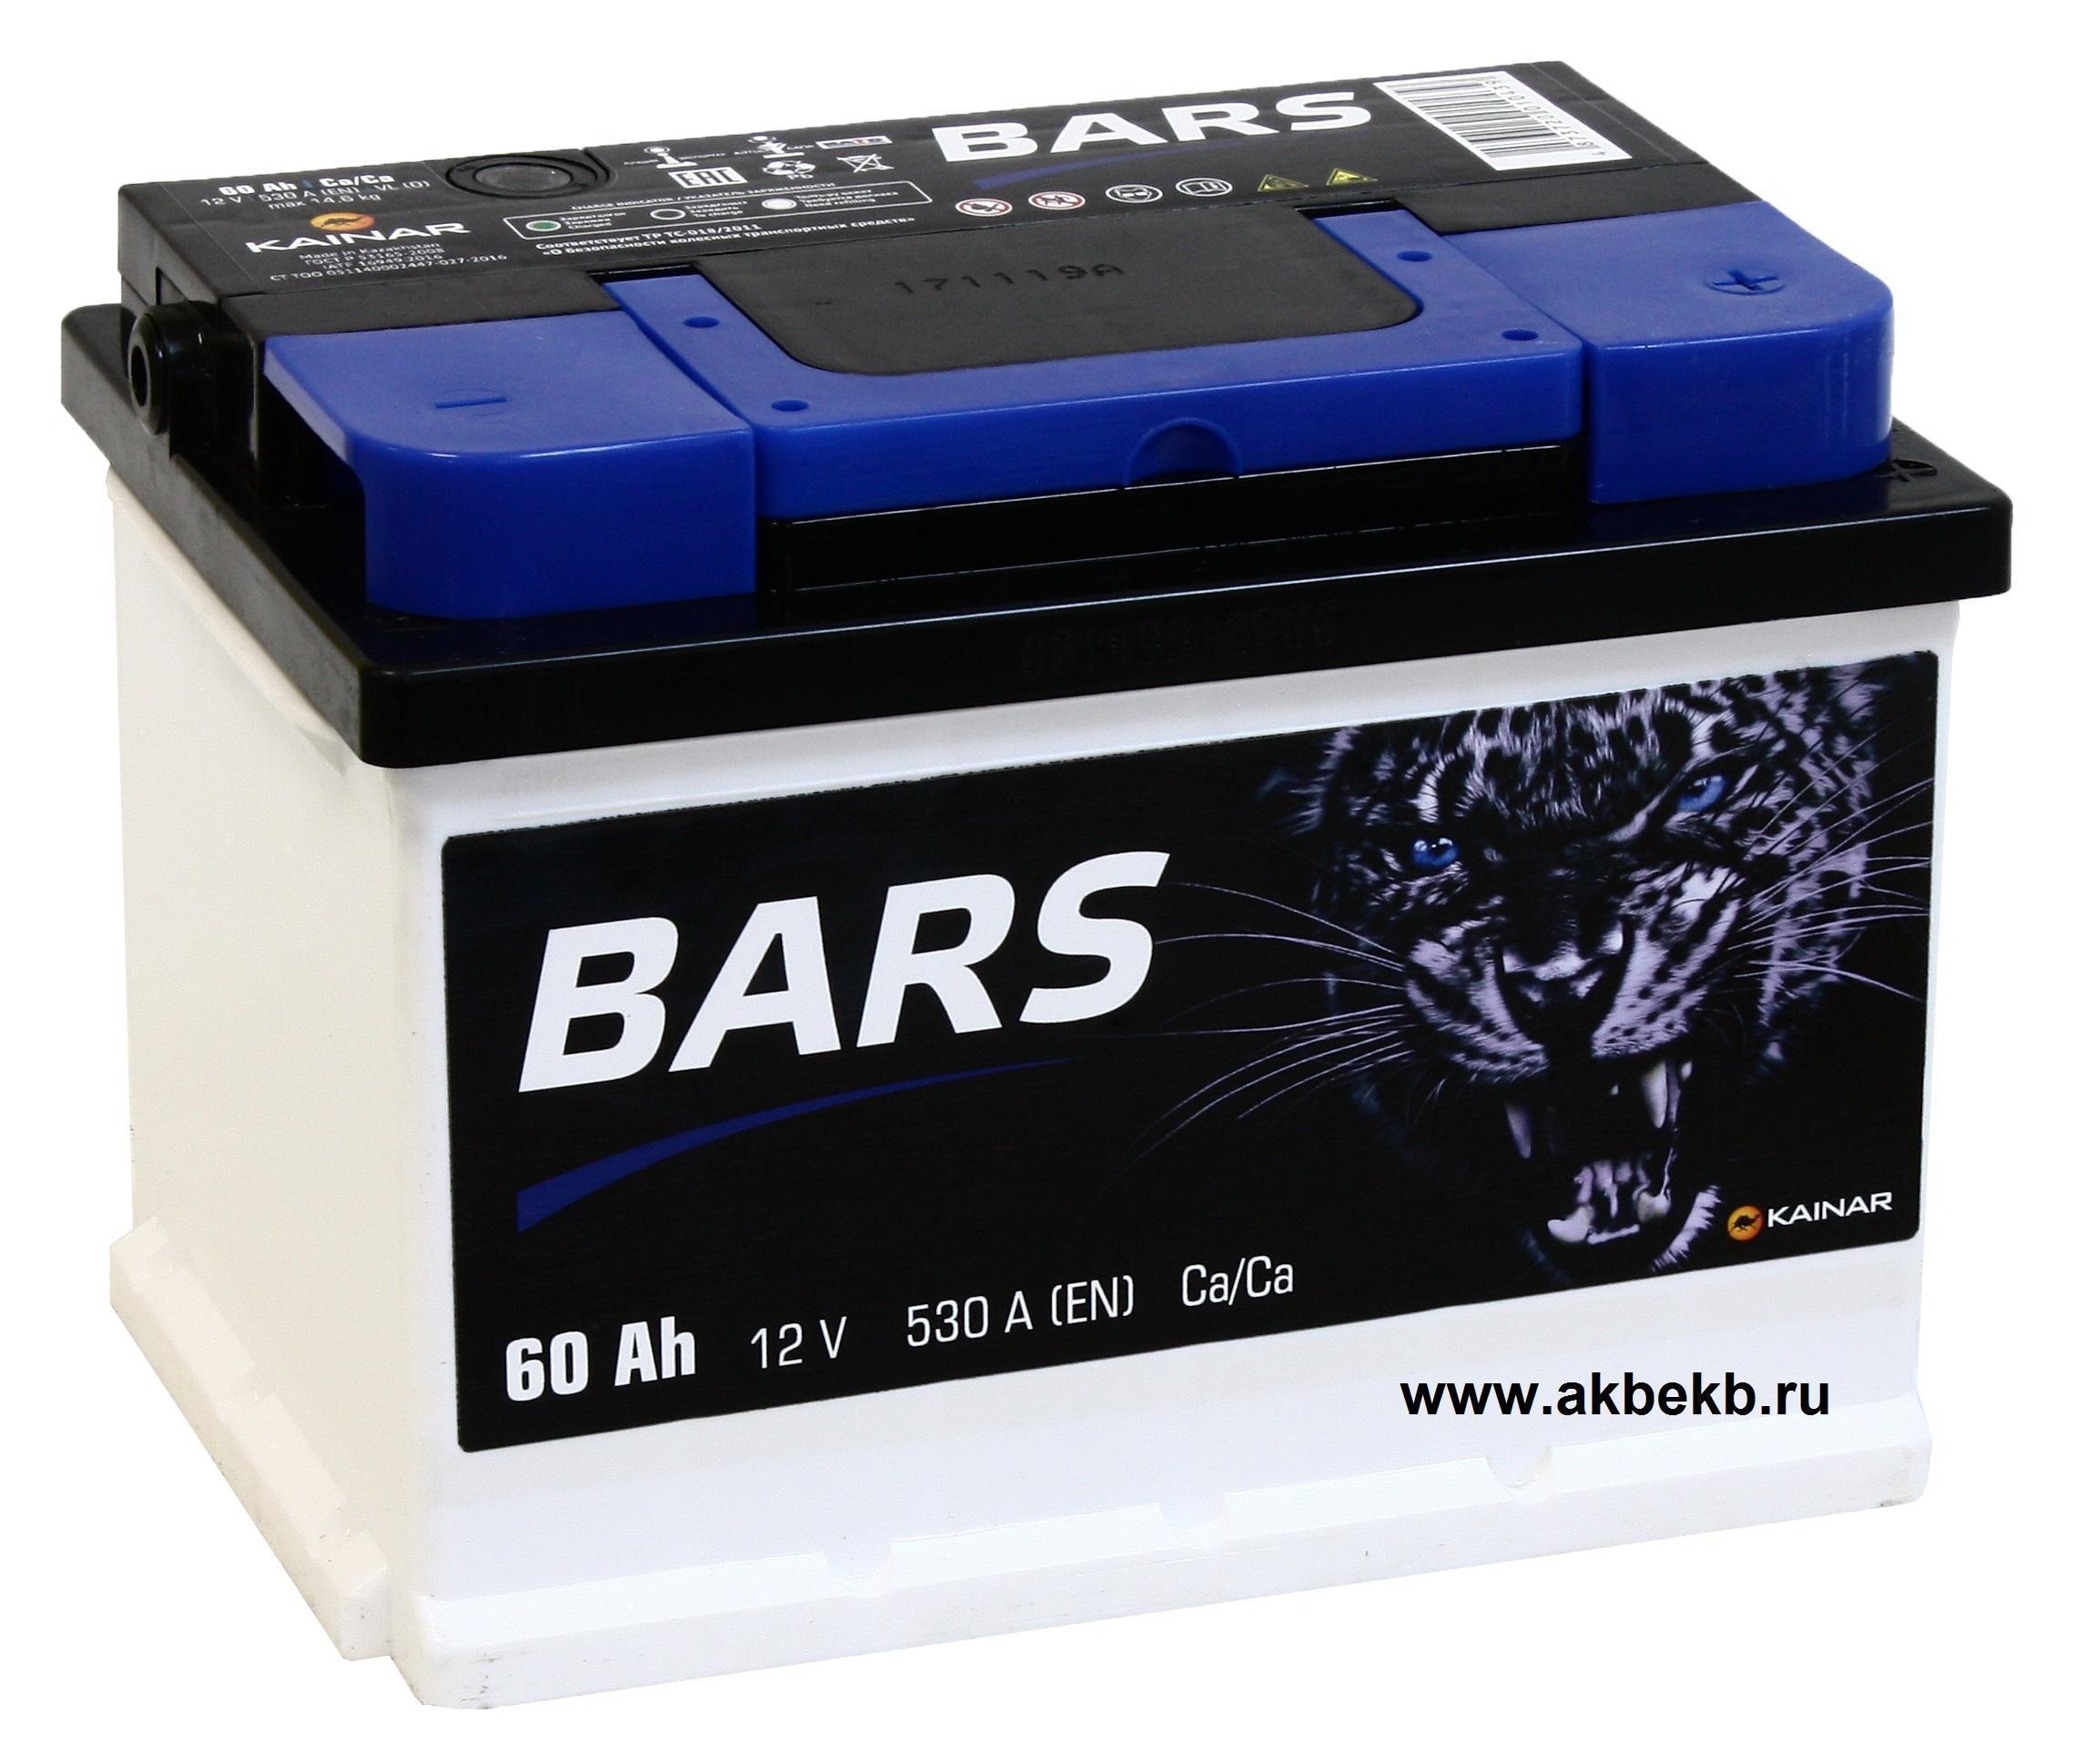 Низкие аккумуляторы автомобильные. АКБ Bars 60 Ач 6ст-60.0 VL. АКБ Bars 60 Ач 6ст-60.1 VL. АКБ Bars 60ah. Легковой аккумулятор Bars 6ст-60.0 VL Premium.